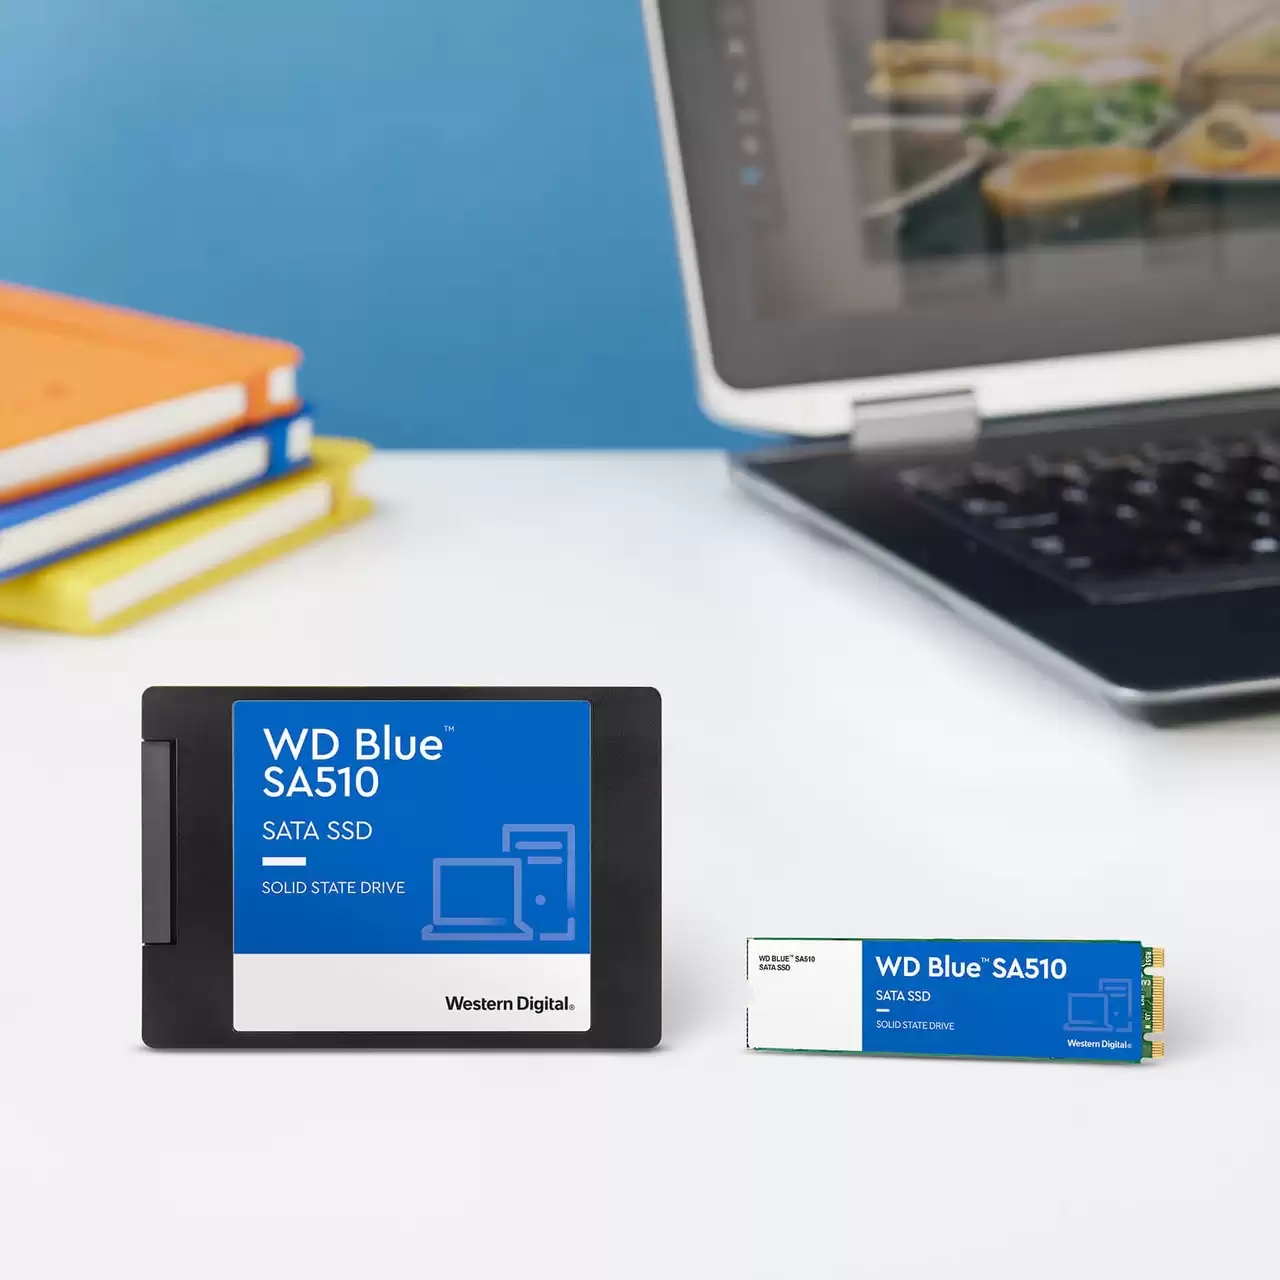 SSD WD Blue M.2 250GB 3D NAND SATA (WDS250G3B0B) - BTO